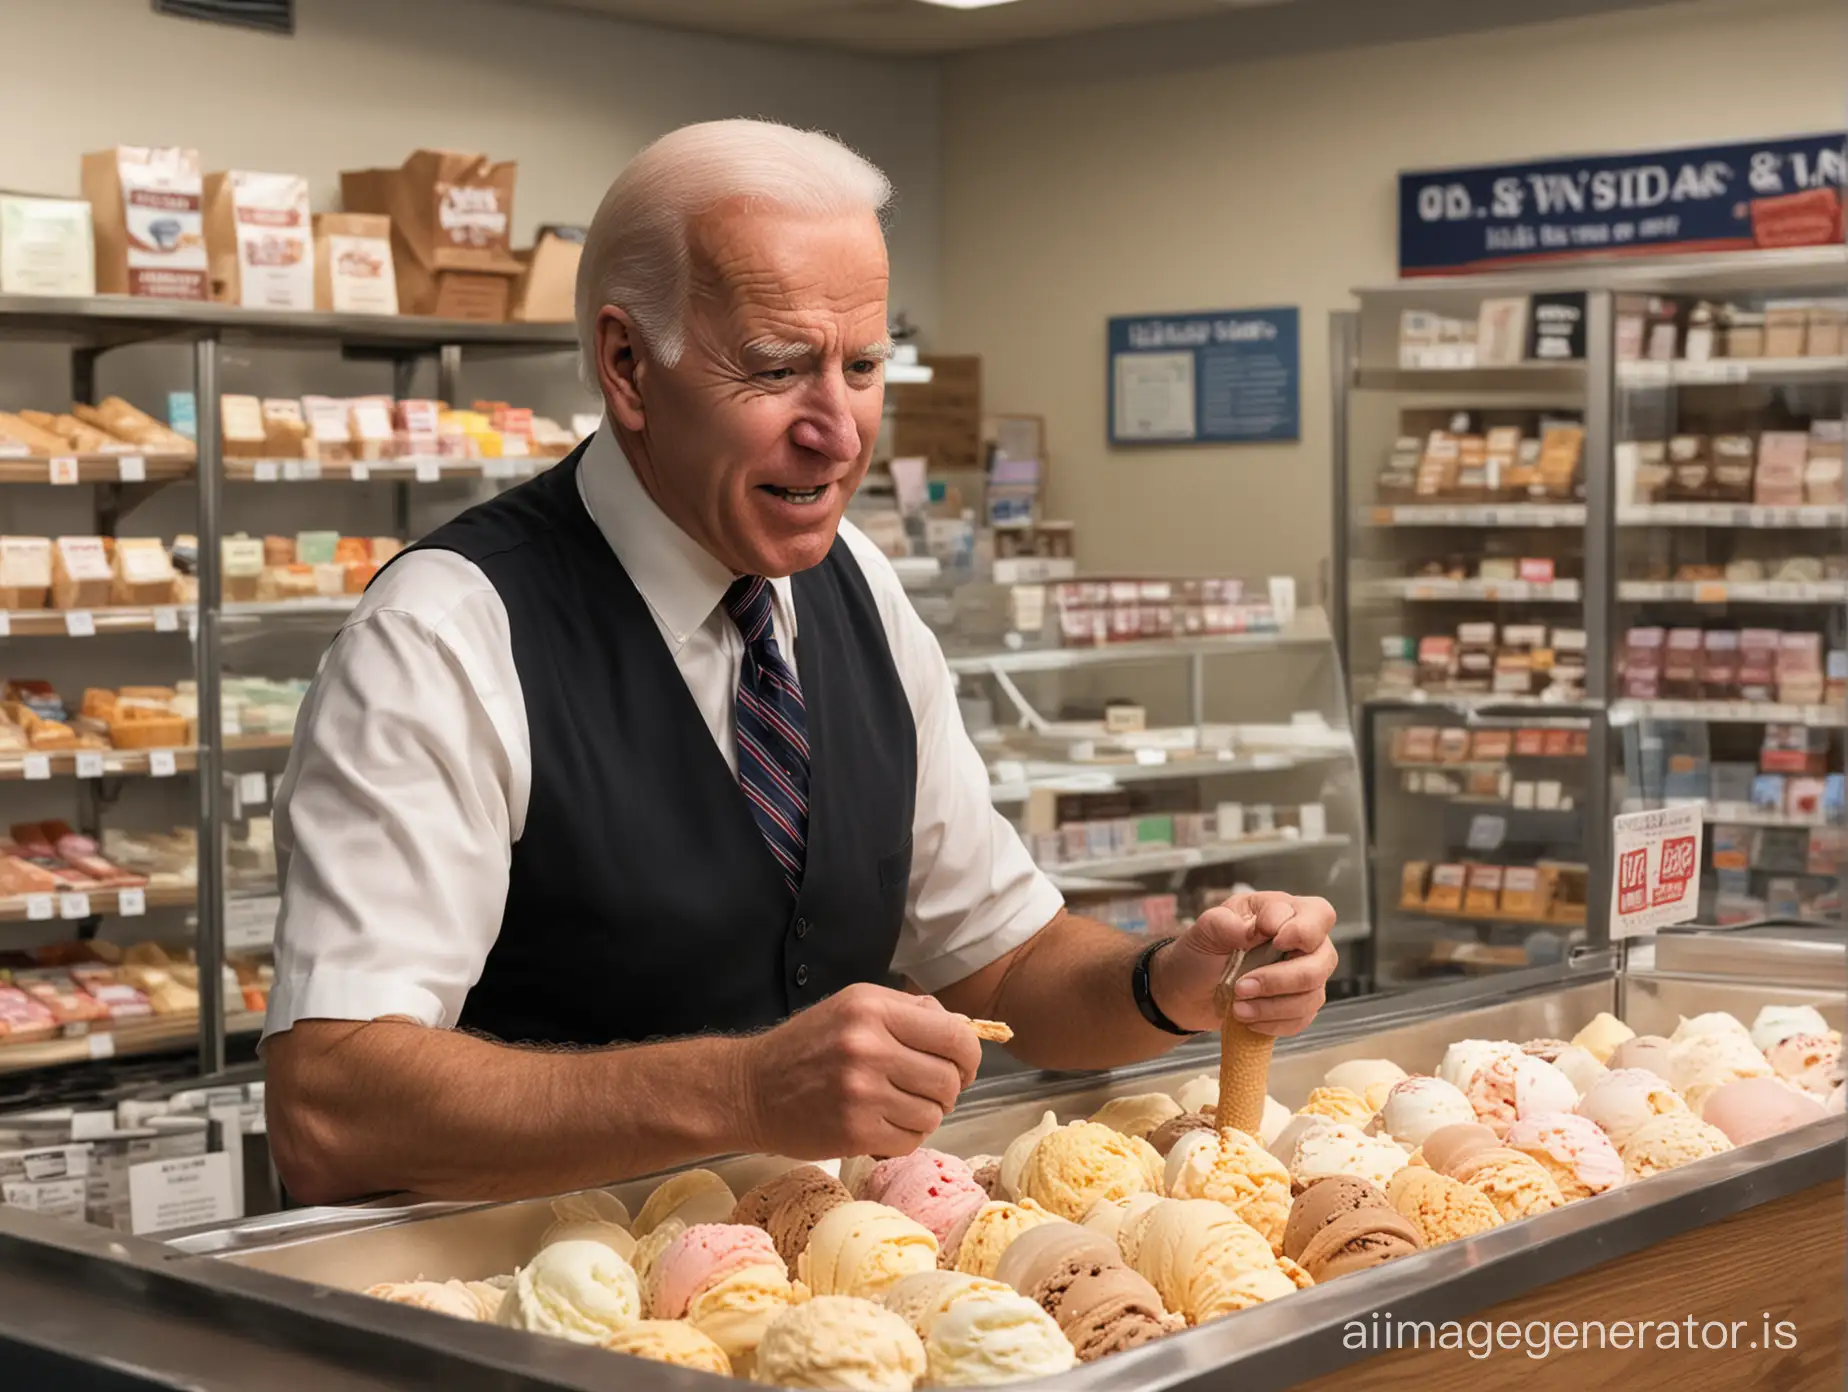 Simuliere Joe Biden, wie er Bestellungen im Eisladen entgegennimmt und die Qualität der Produkte im Laden überprüft.